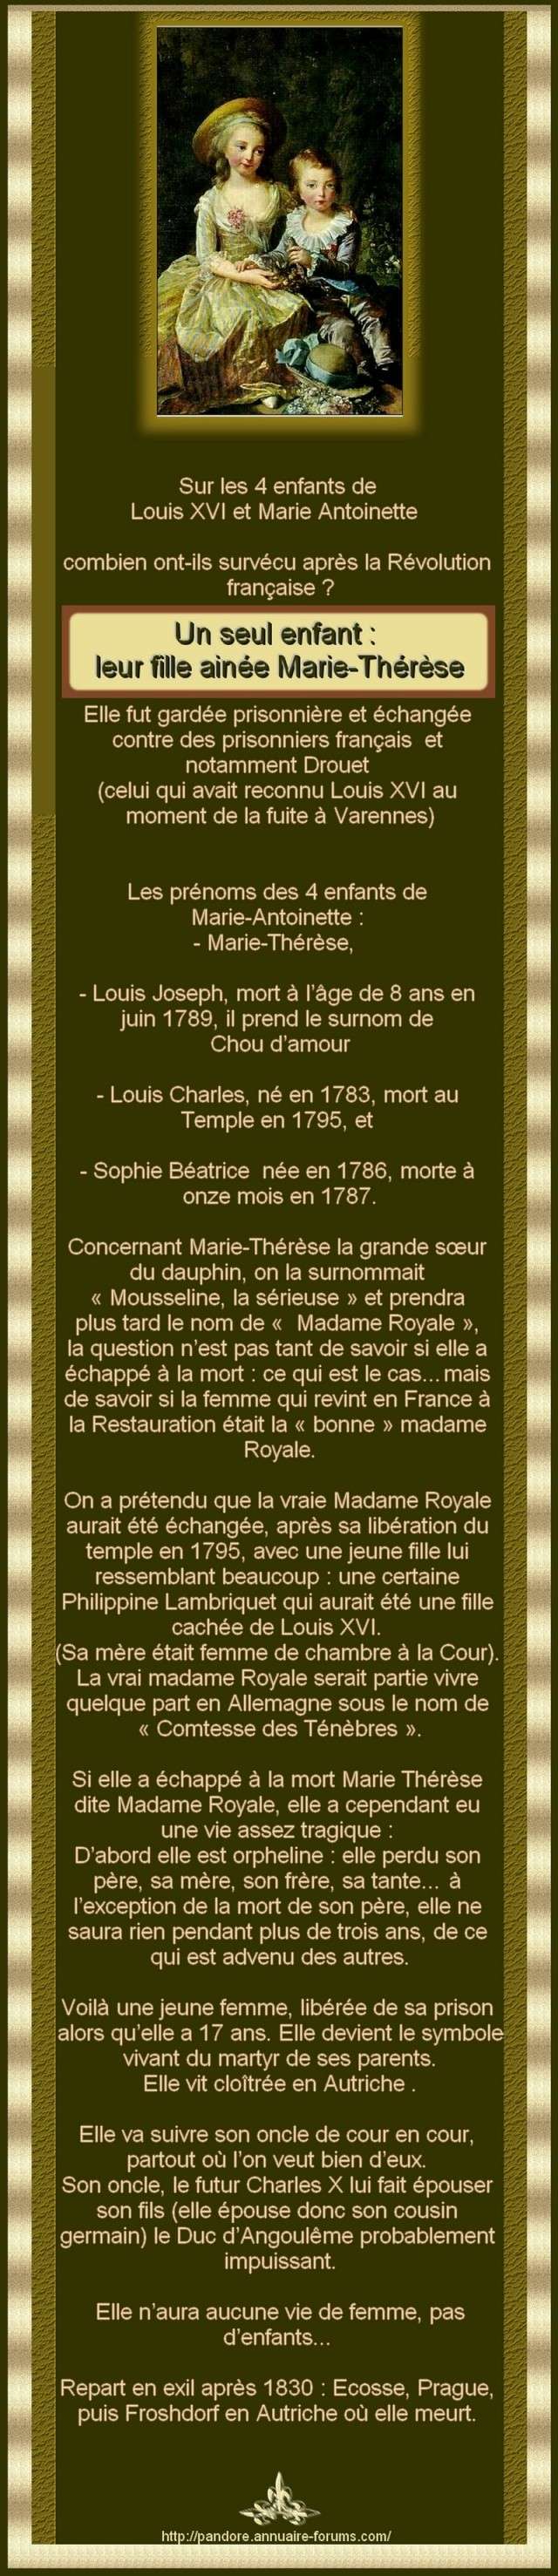 UN SEUL ENFANT SURVECU MARIE THERESE - MOUSSELINE LA SERIEUSE MADAME ROYALE  0hor86